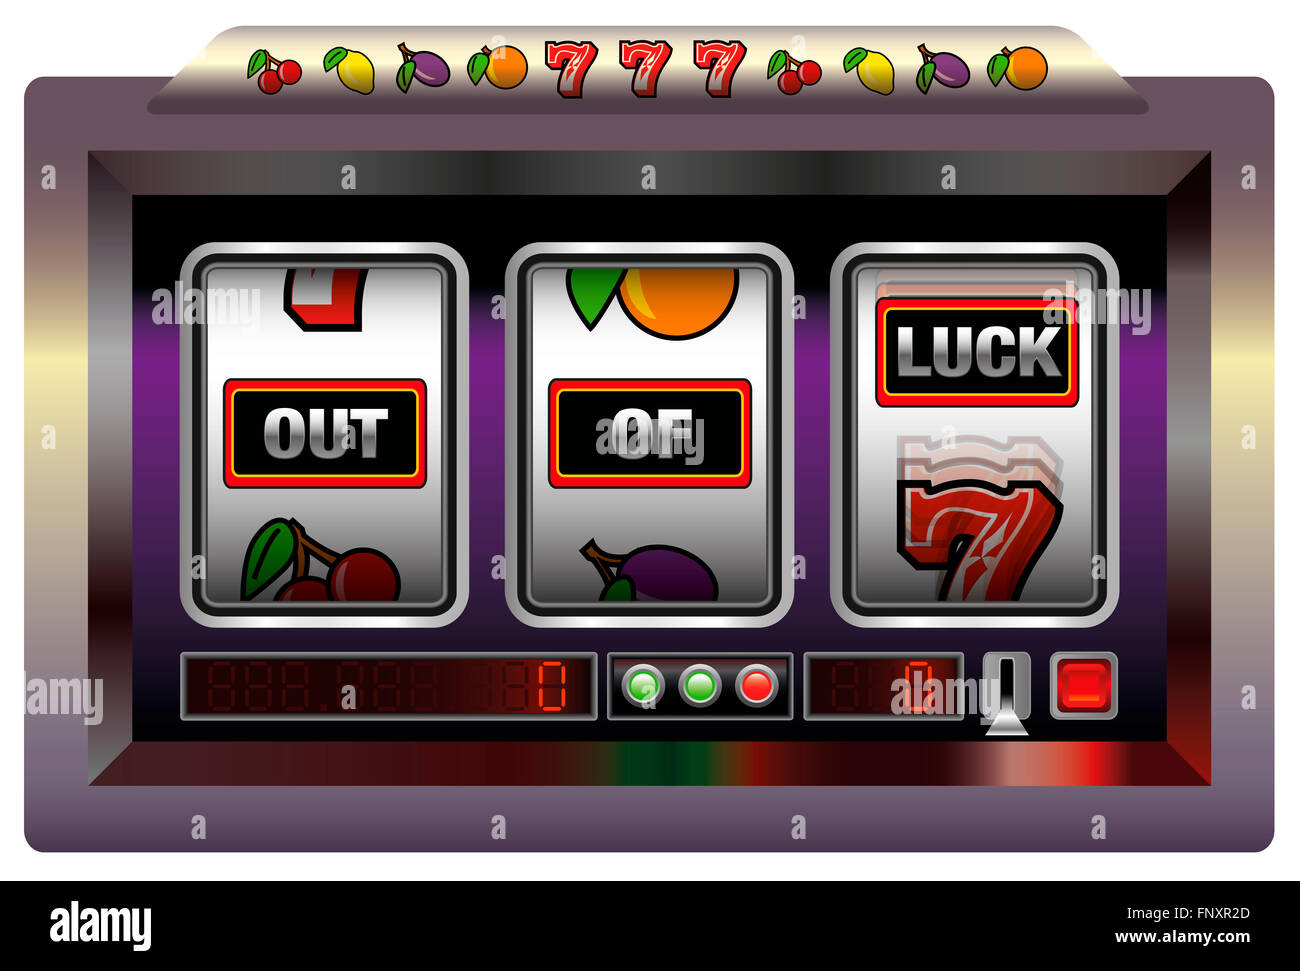 Gaming-Maschine mit drei Walzen, die Beschriftung von Glück. Abbildung auf weißem Hintergrund. Stockfoto